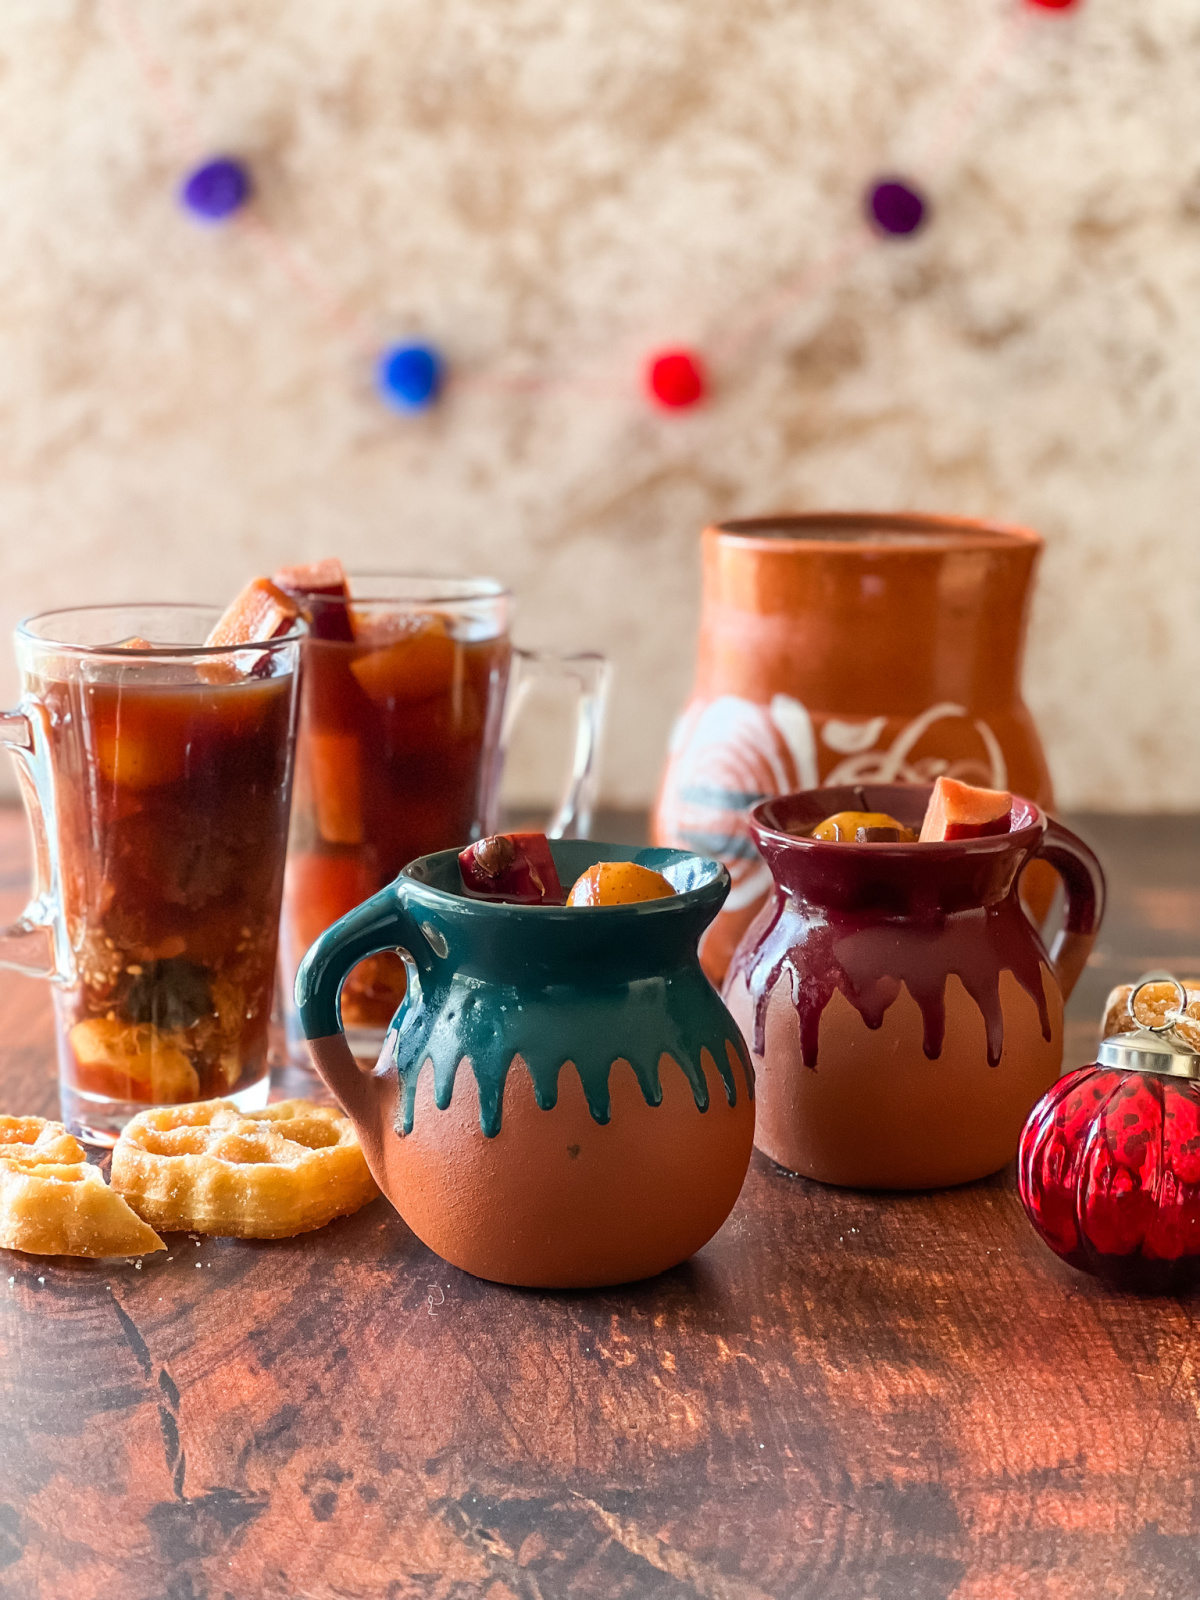 El ponche navideño mexicano puede ser un coctel y servido sin alcohol. Aquí lo servimos en jarritos y tazas altas de café.